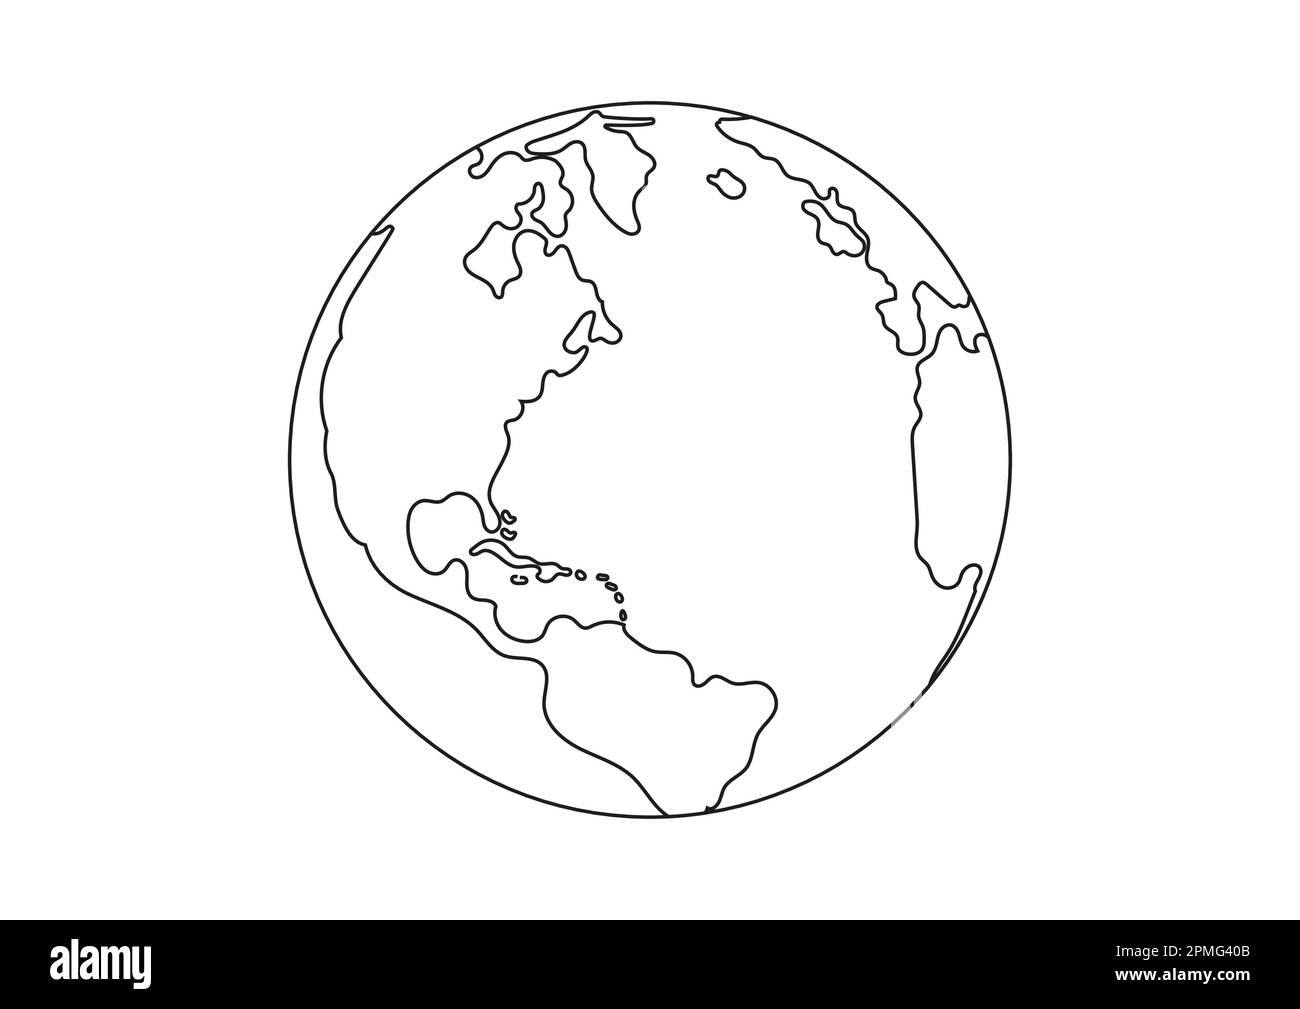 Vecteur noir et blanc Planet Earth Clipart. Page de coloriage de la planète Terre Illustration de Vecteur